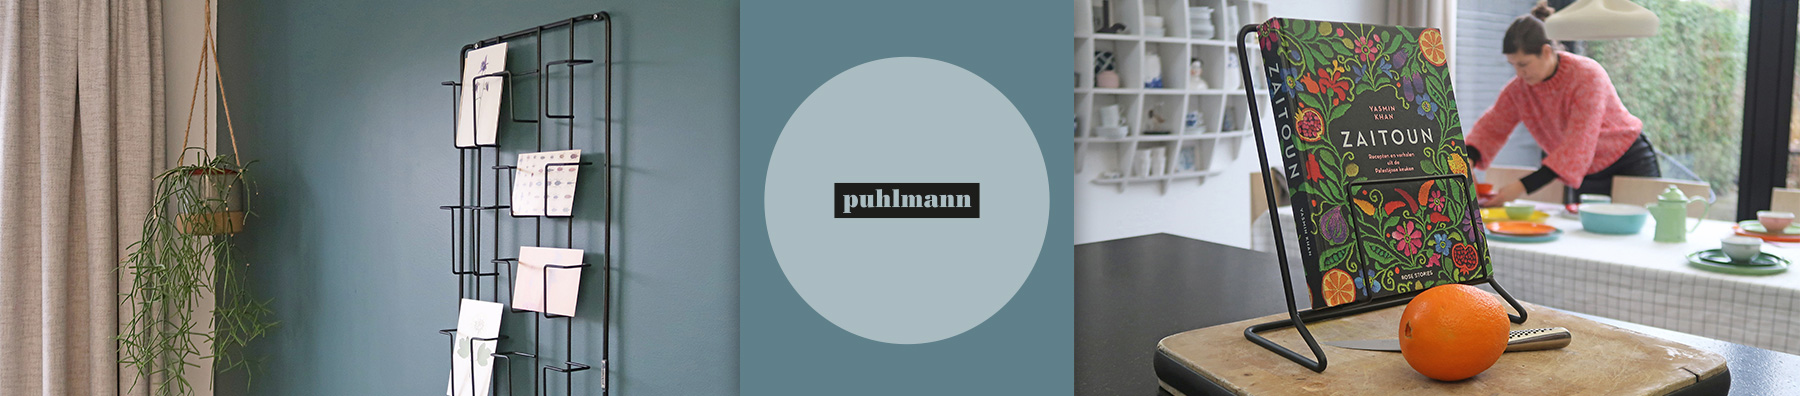 puhlmann